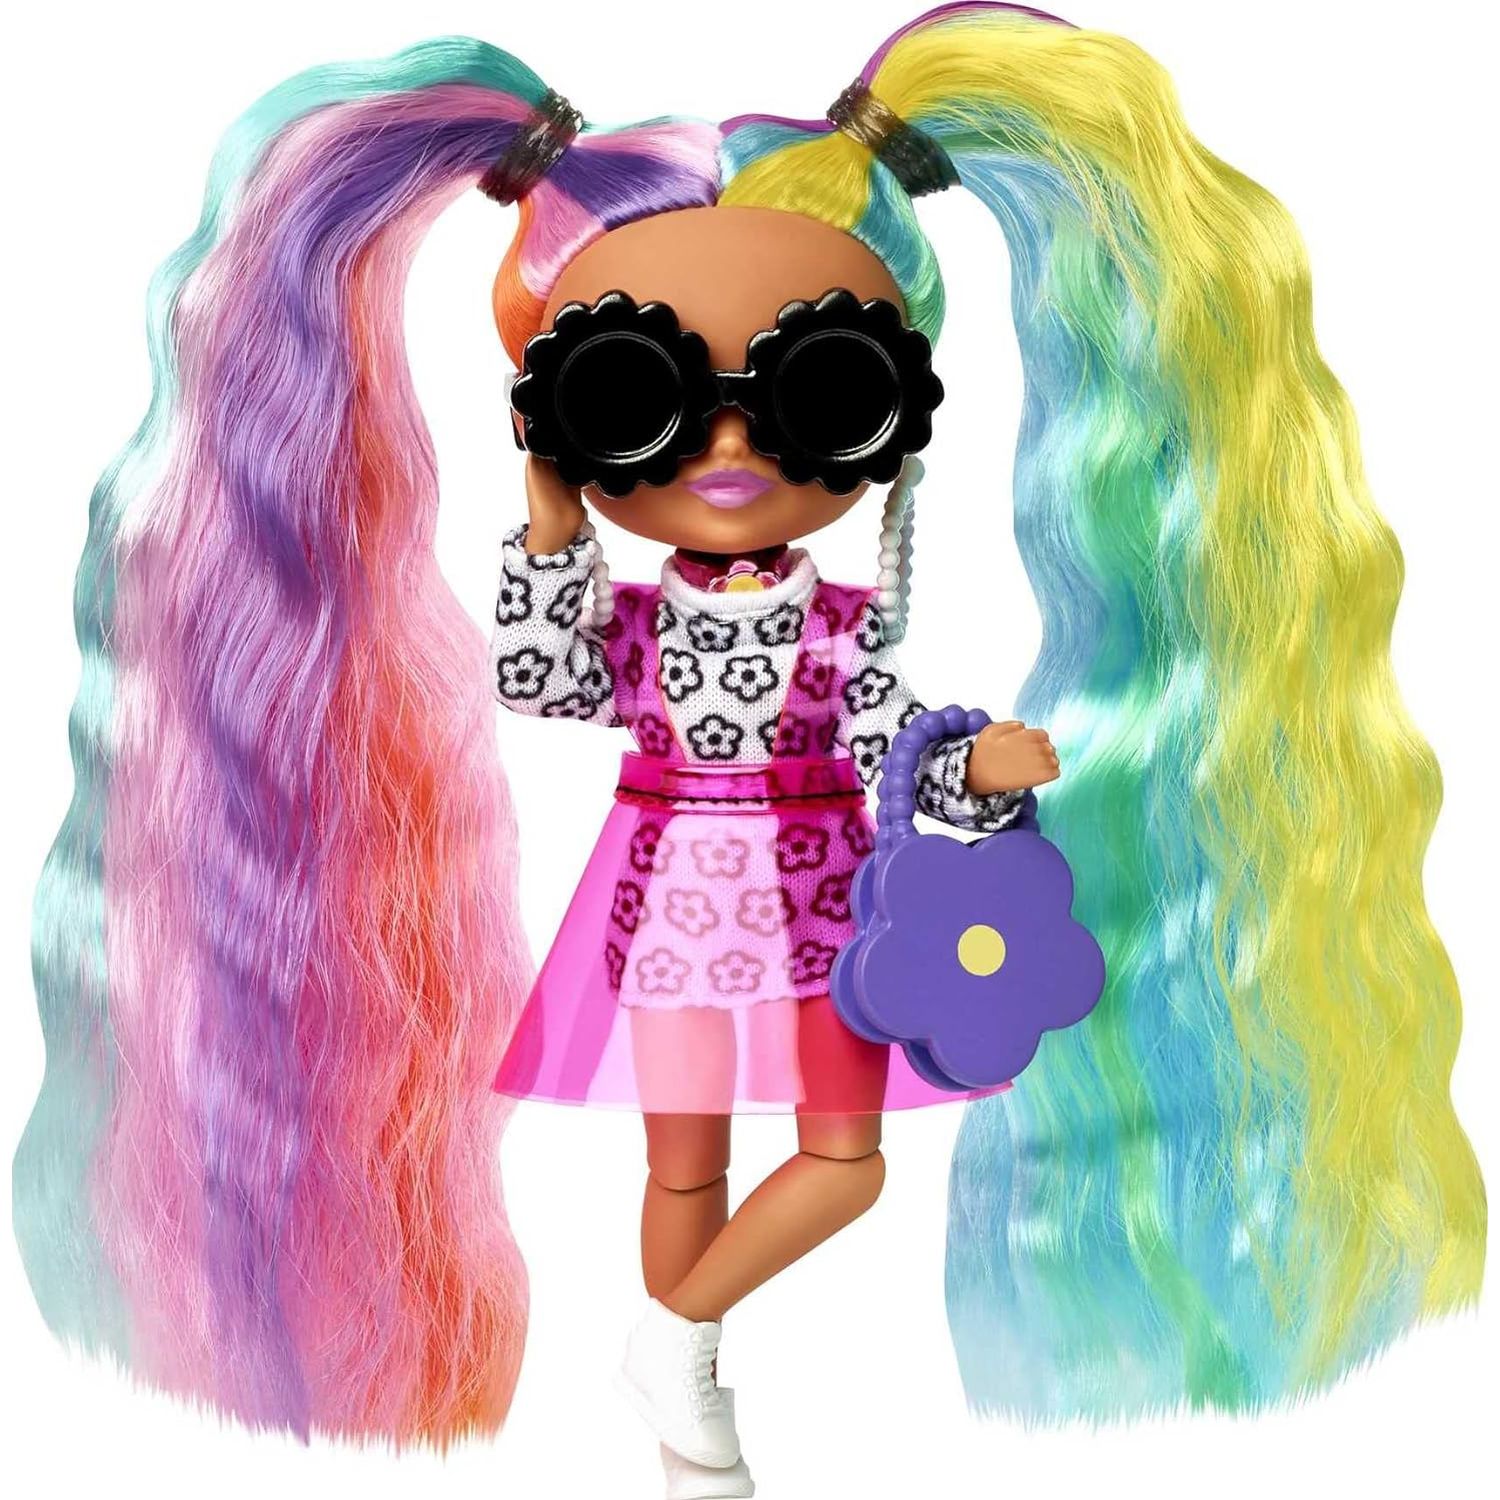 Кукла Barbie Экстра Минис 6 HHF82 HGP62 - фото 2